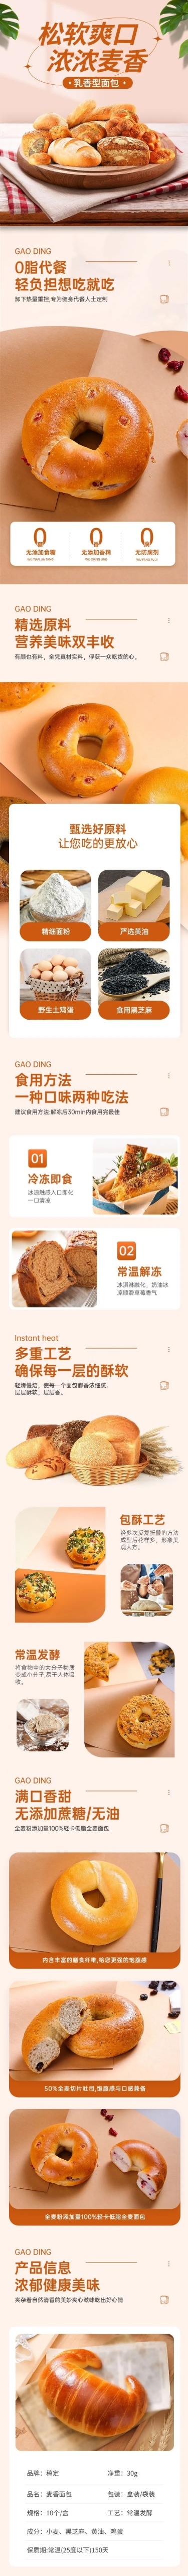 电商烘焙甜品速食面包促销活动商品详情页